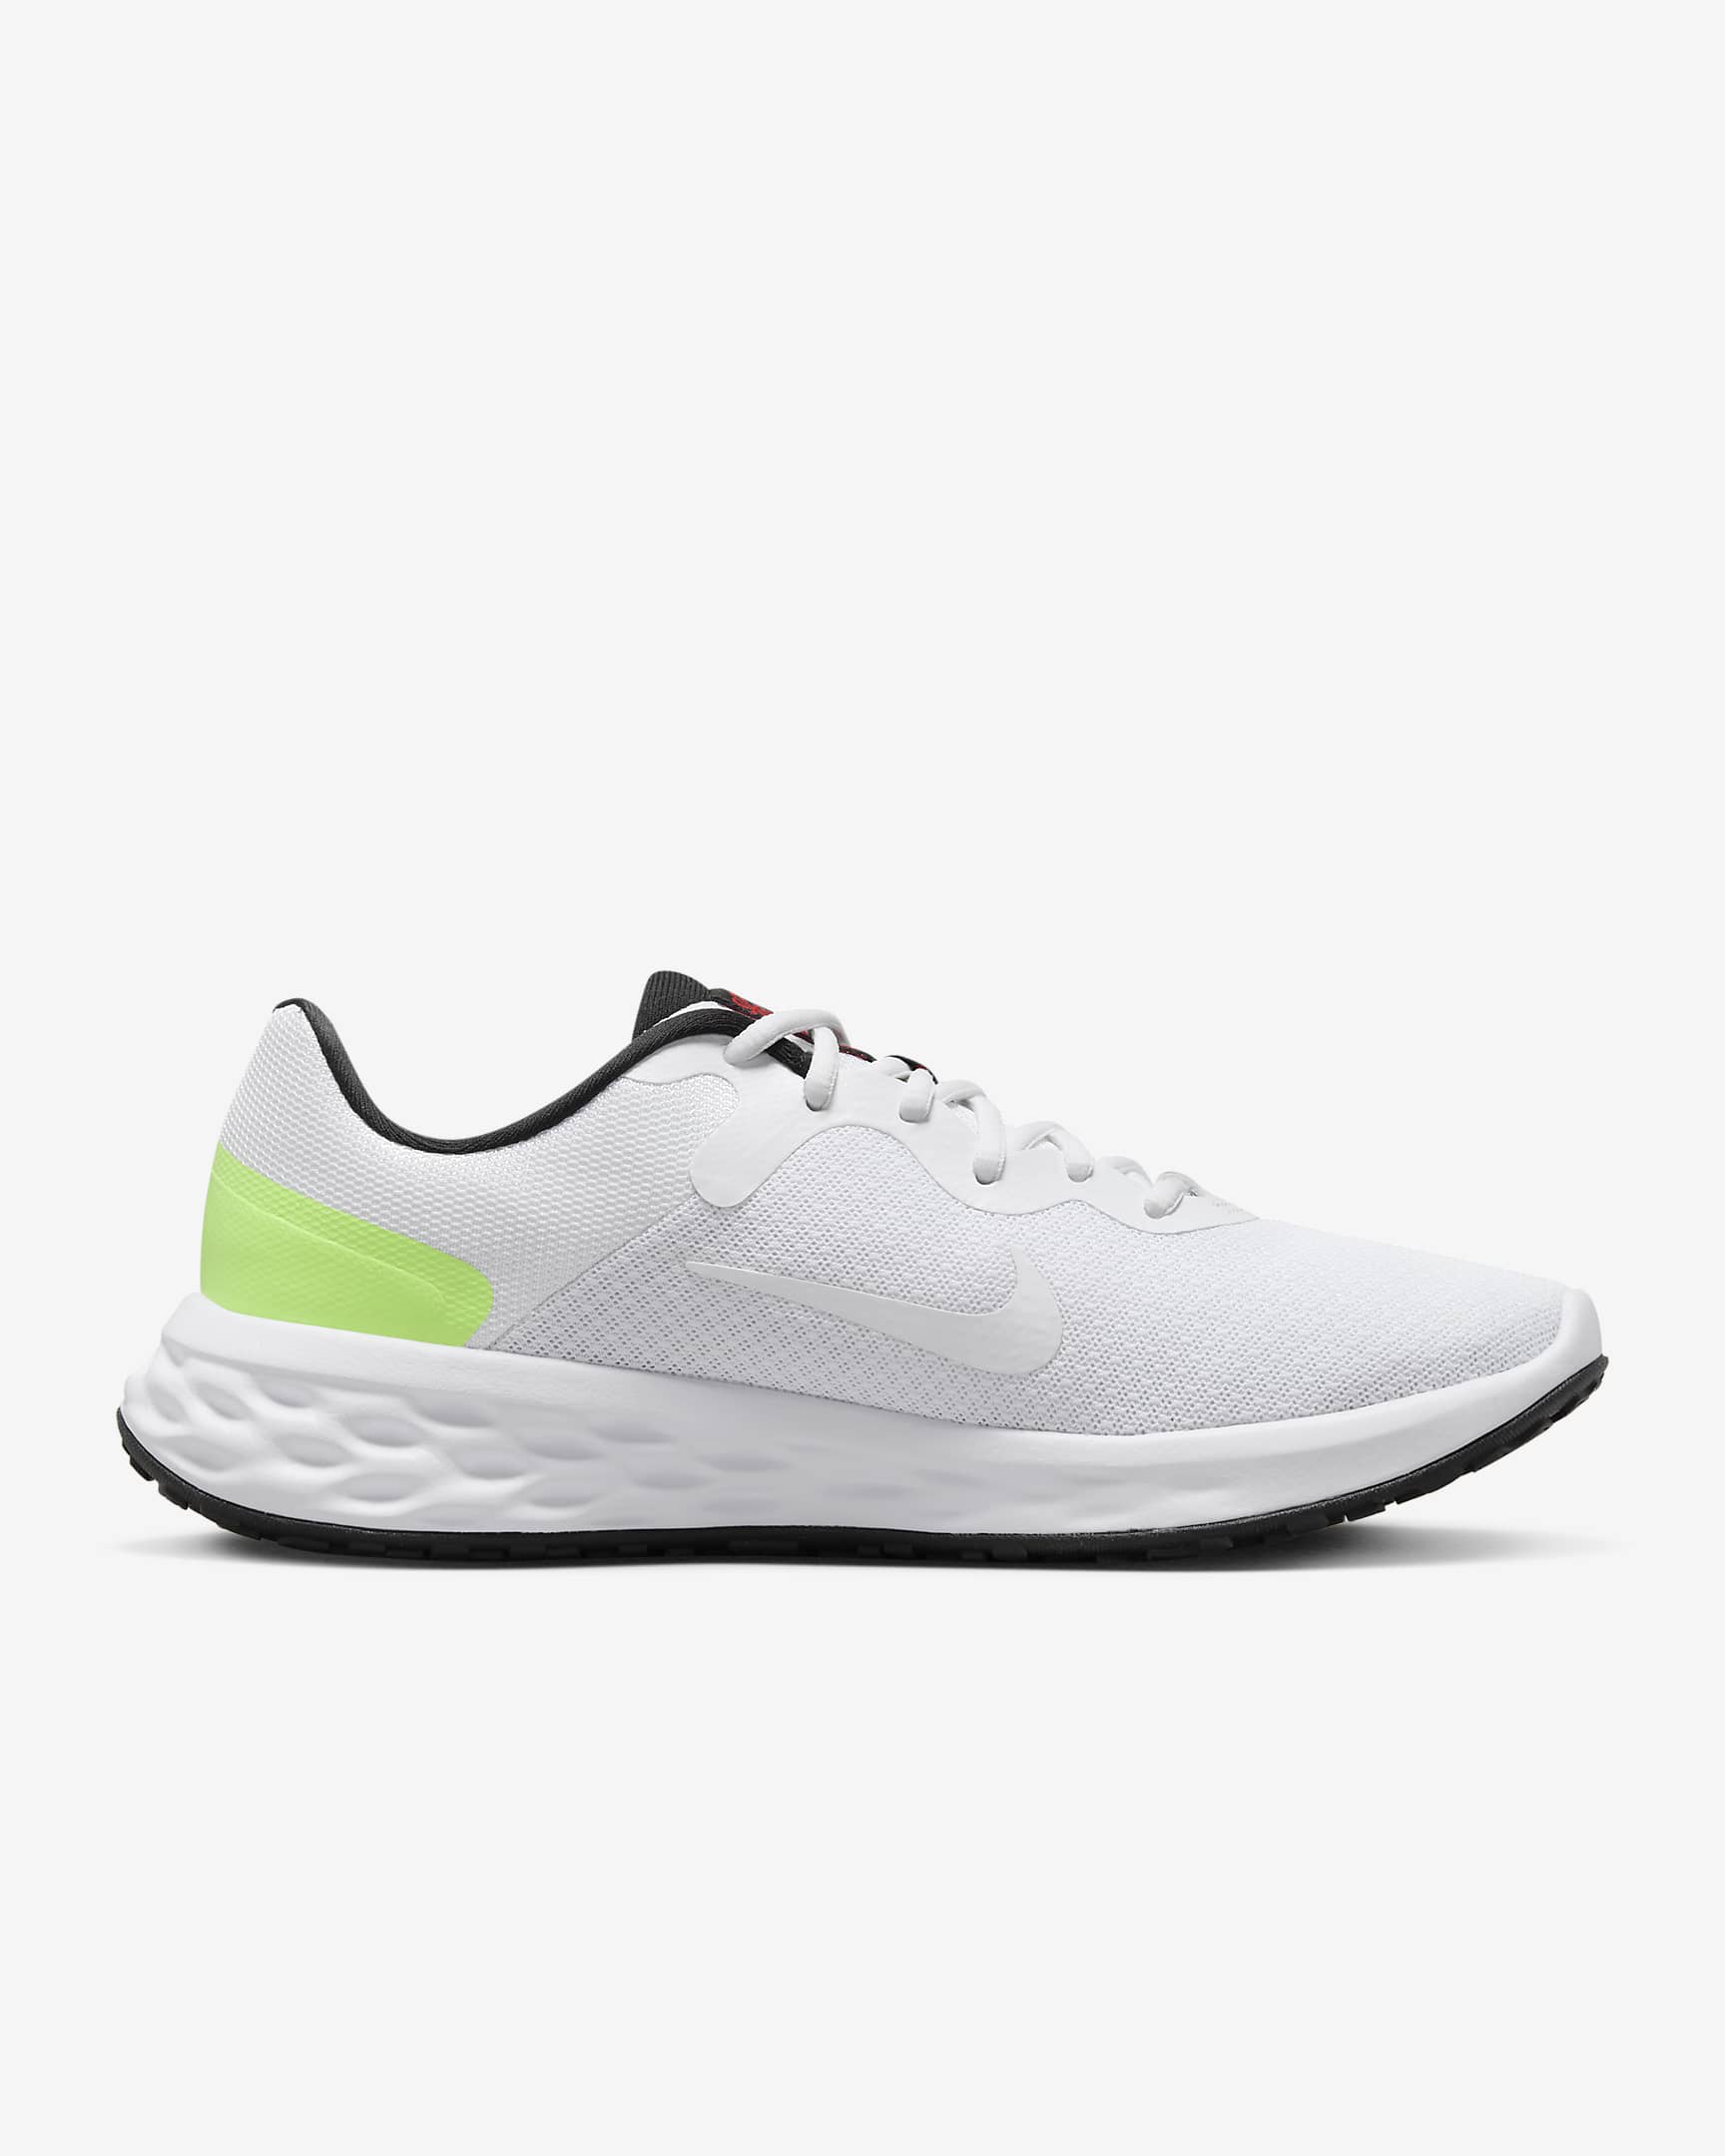 Giày Nike Revolution 6 SE Men Road Running Shoes #White - Kallos Vietnam